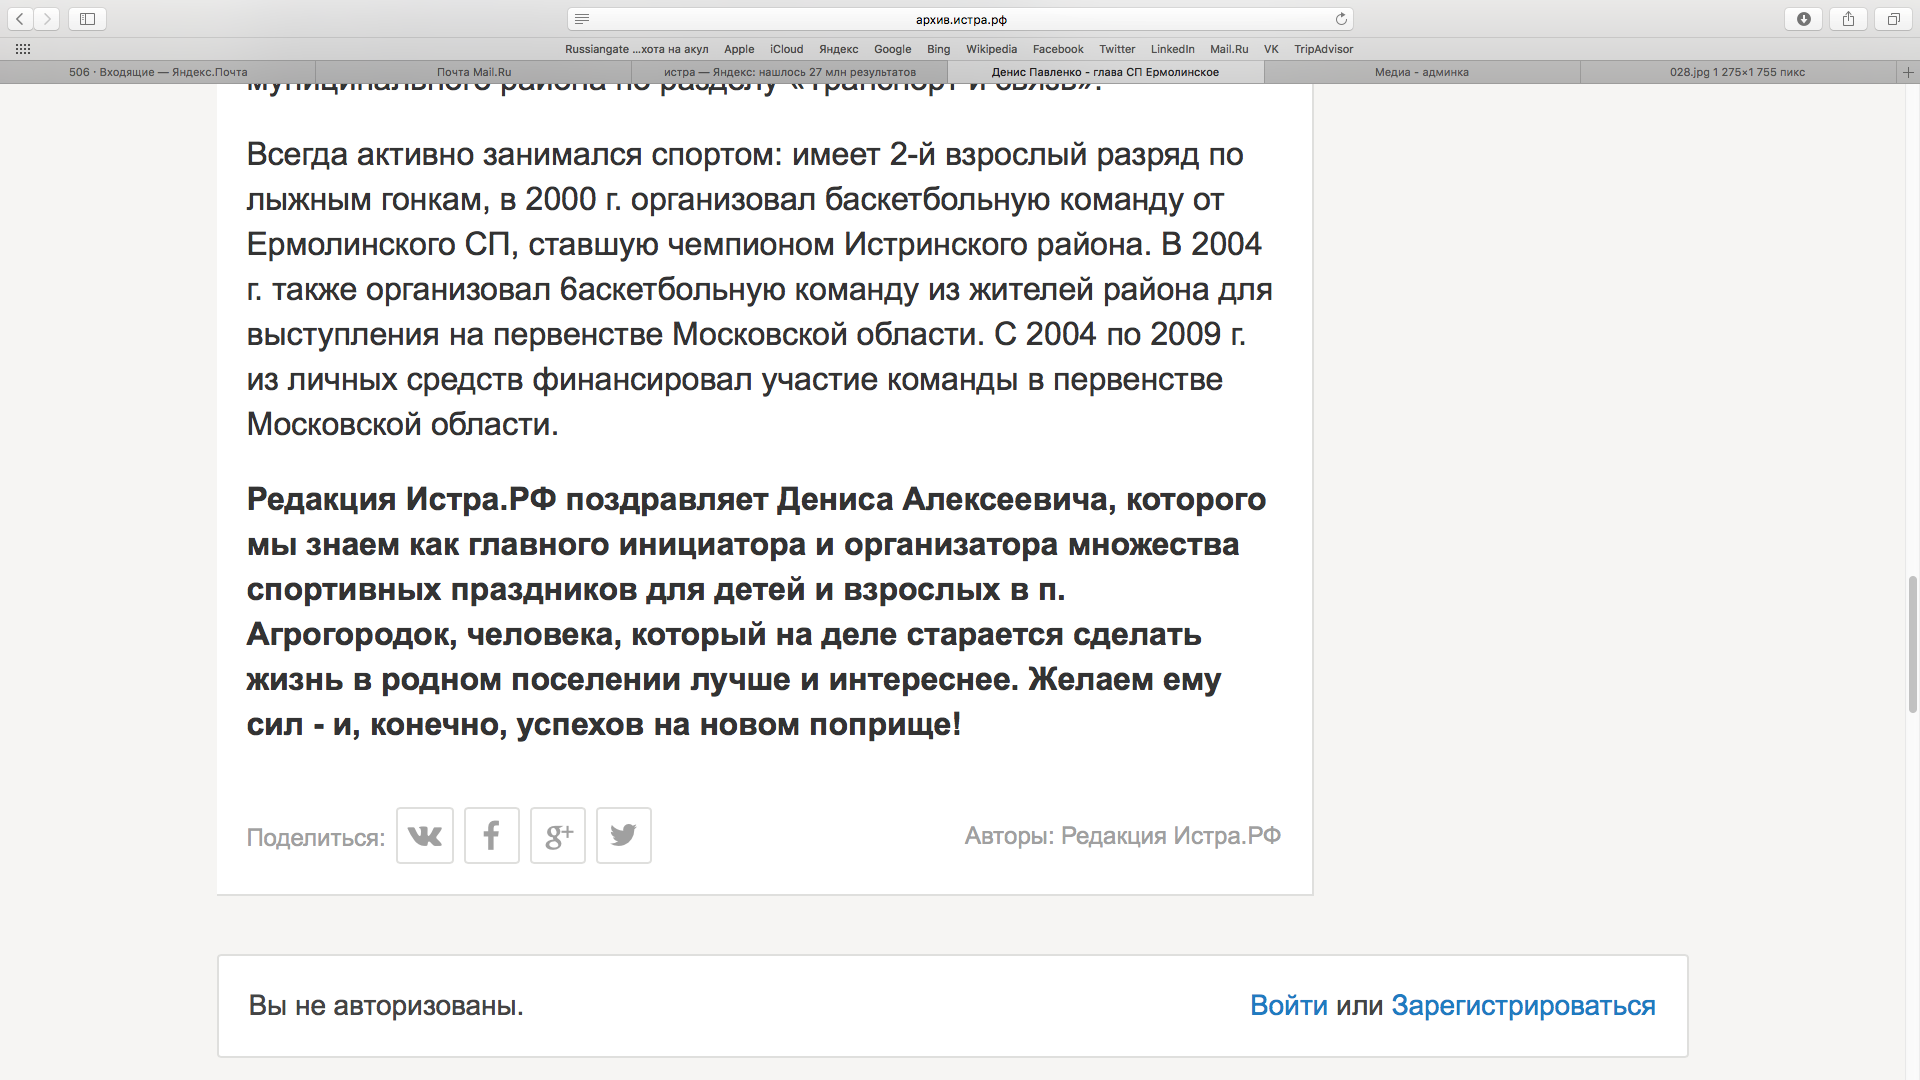 5 декабря 2014 года районная газета  желала успехов Павленко на новом поприще 